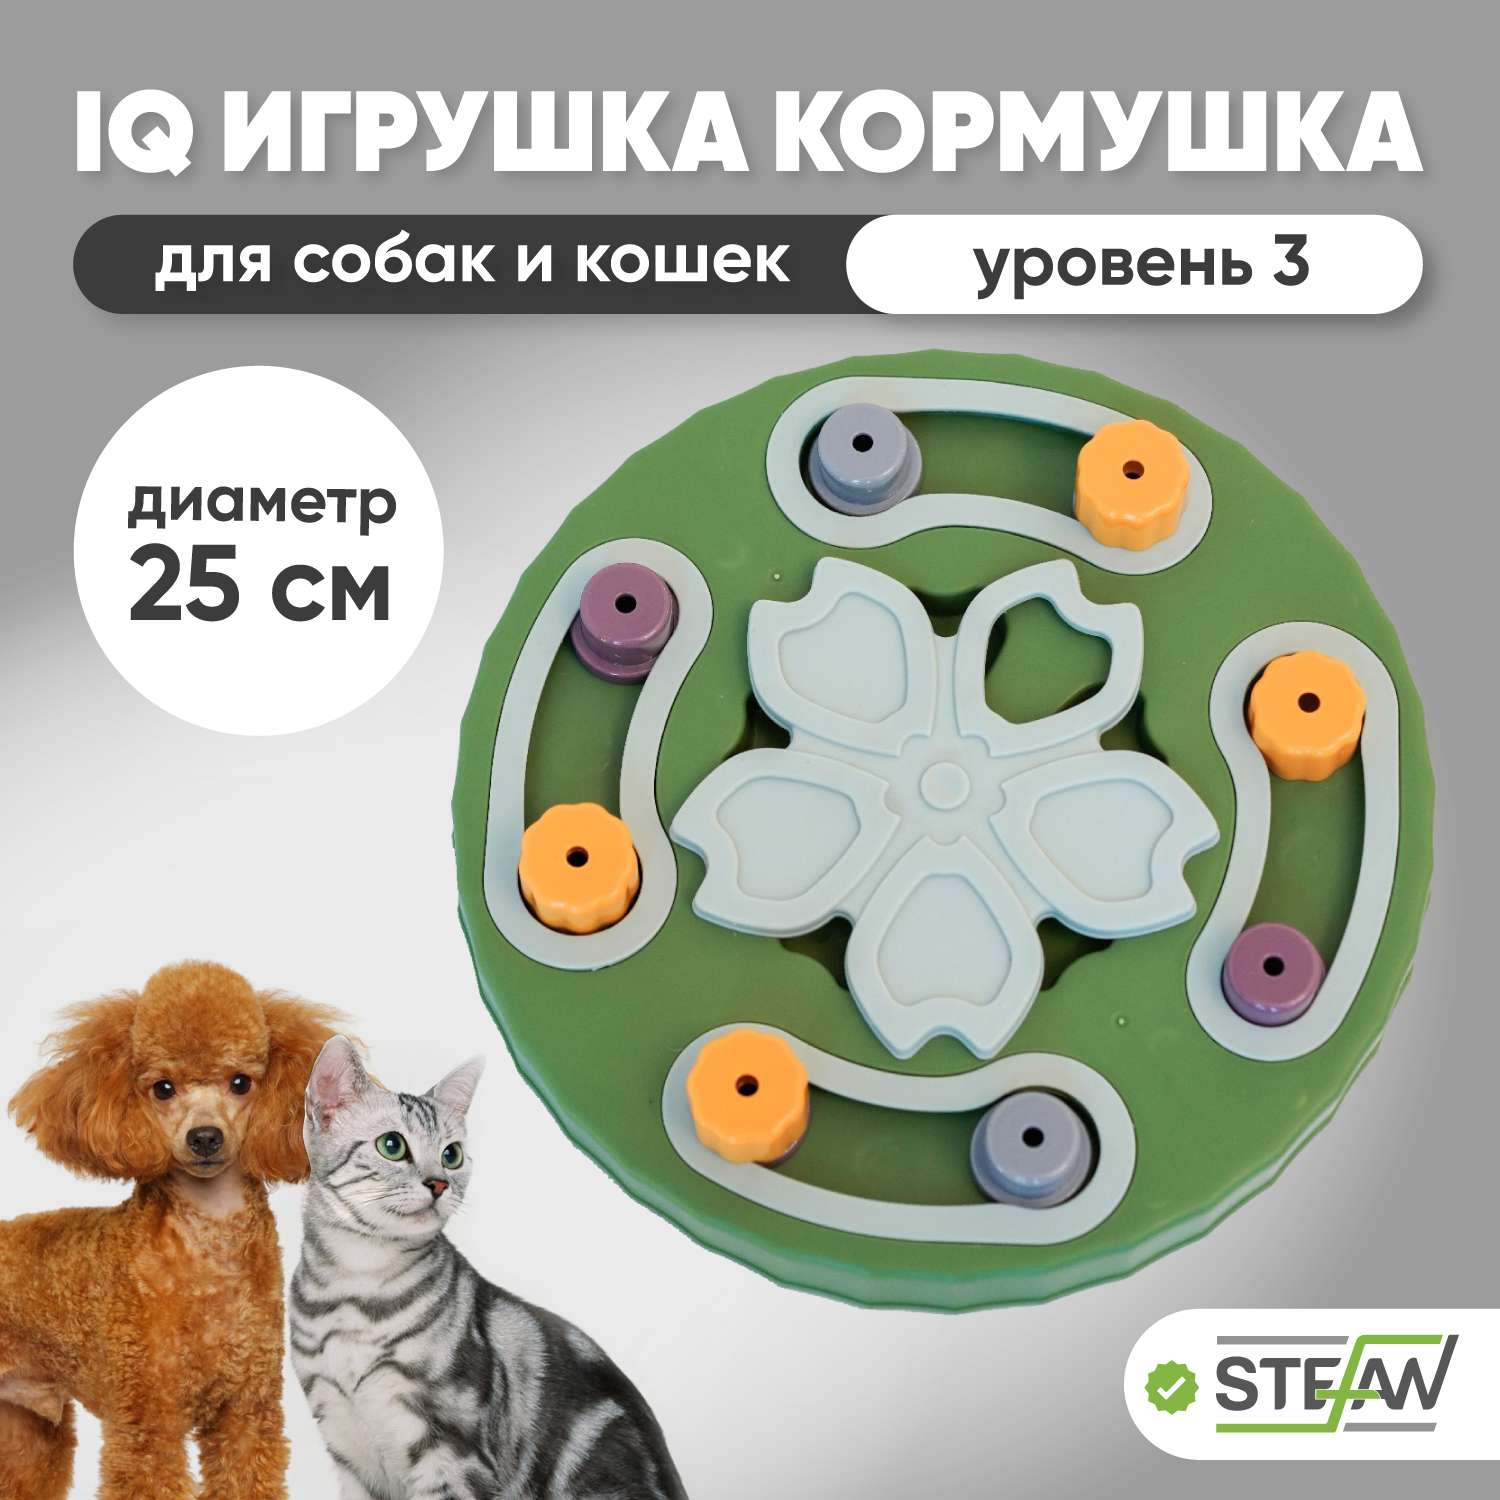 Игрушка для животных Stefan интерактивная развивающая головоломка IQ зеленая - фото 1